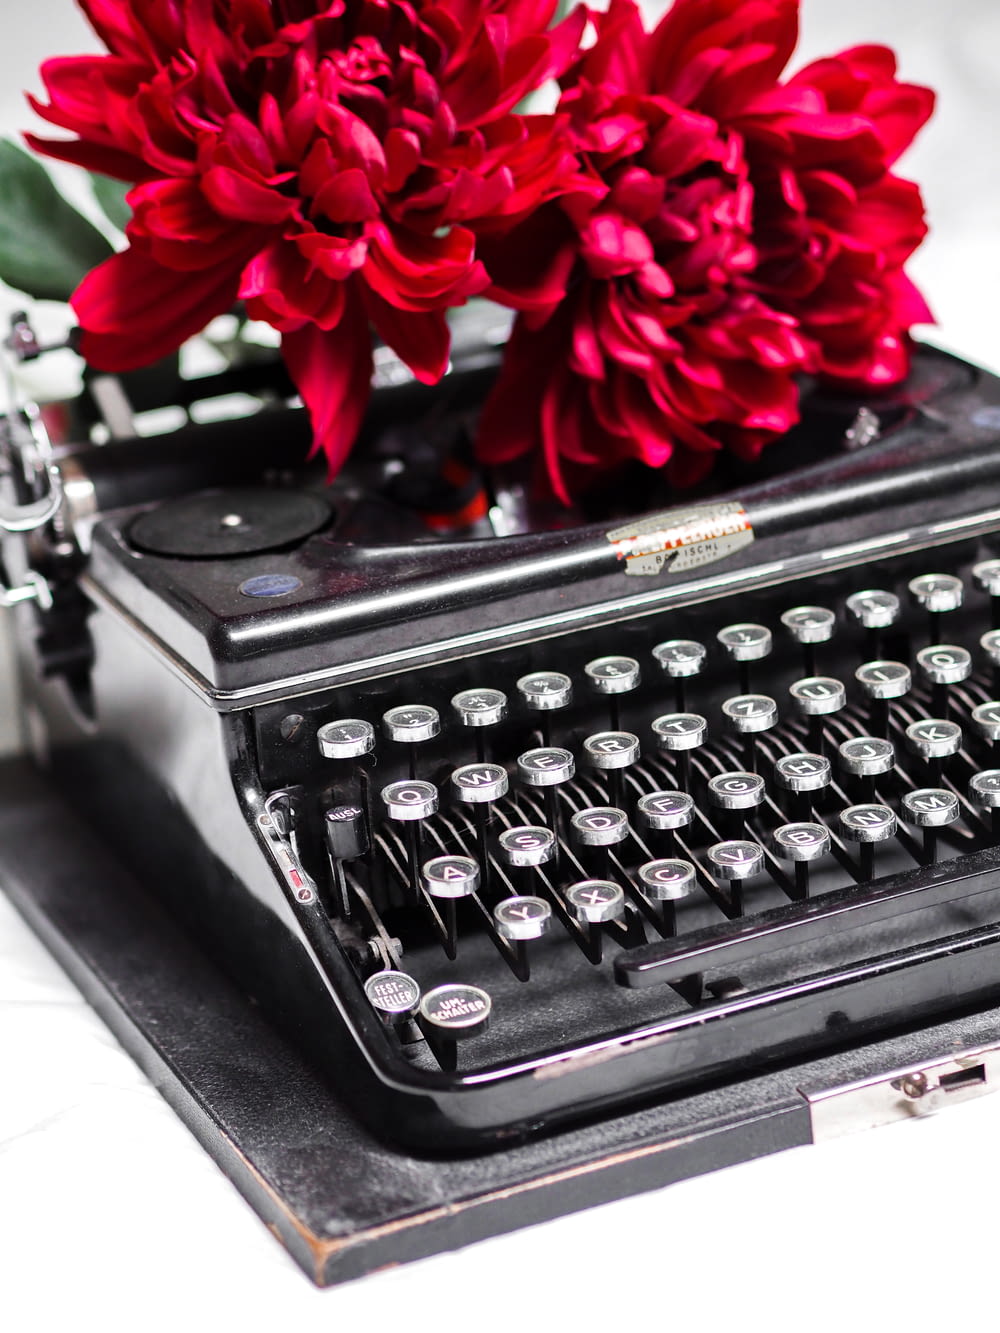 rosa roja sobre máquina de escribir negra